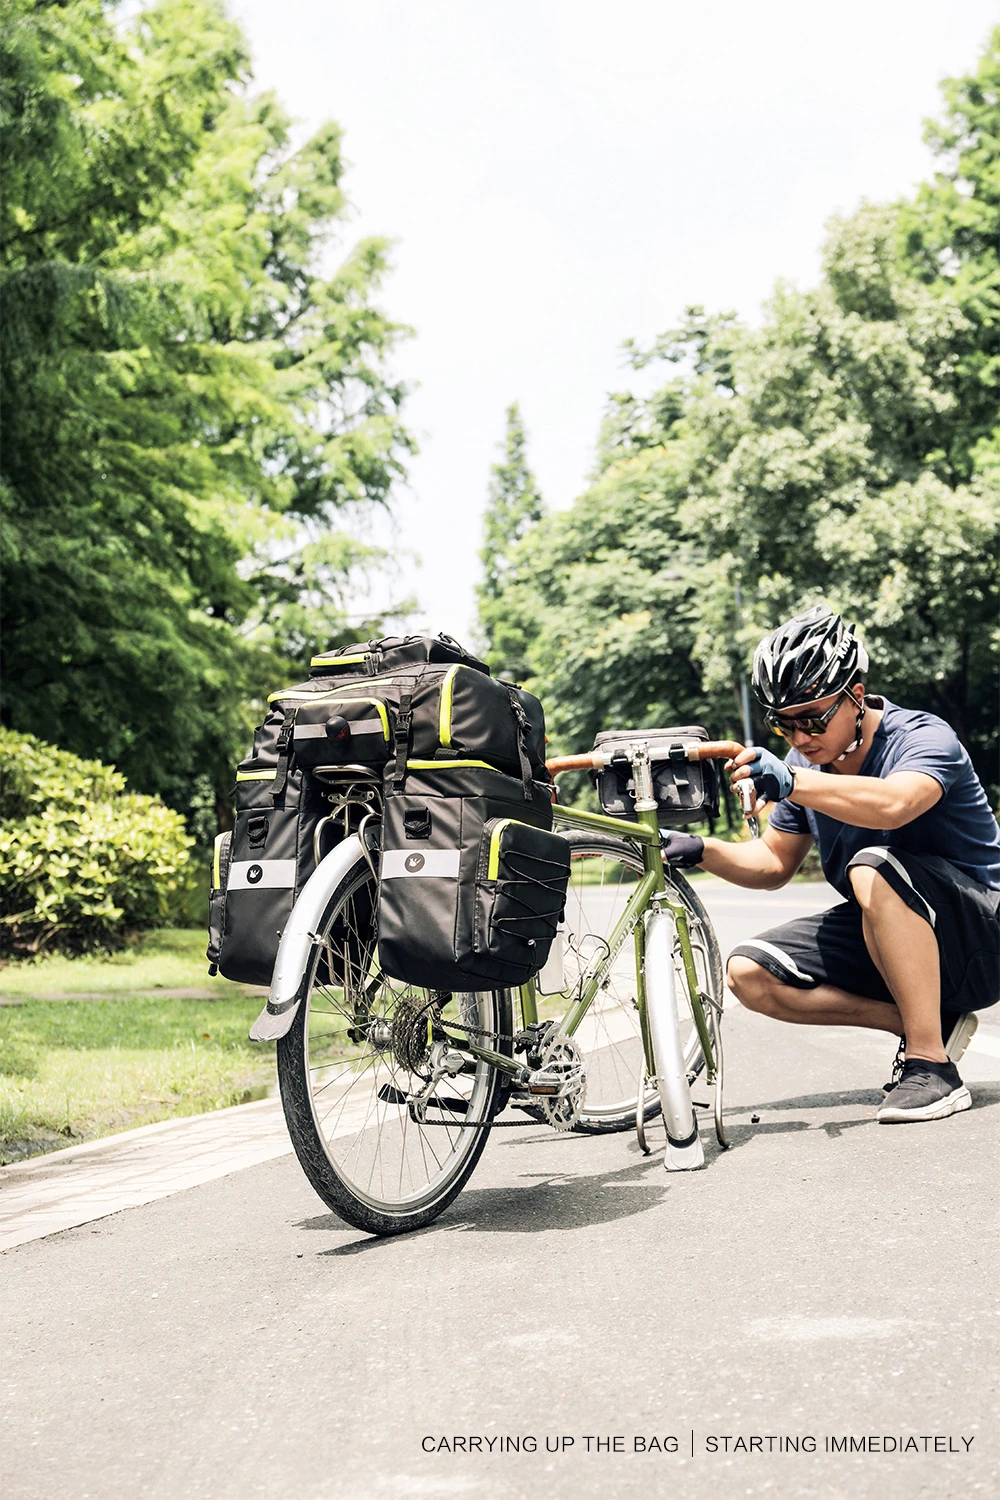 RHINOWALK, Горный Дорожный велосипед, 3 в 1, сумки для багажника, для велоспорта, двухсторонняя, задняя стойка, заднее сиденье, сумка для багажника, 70л